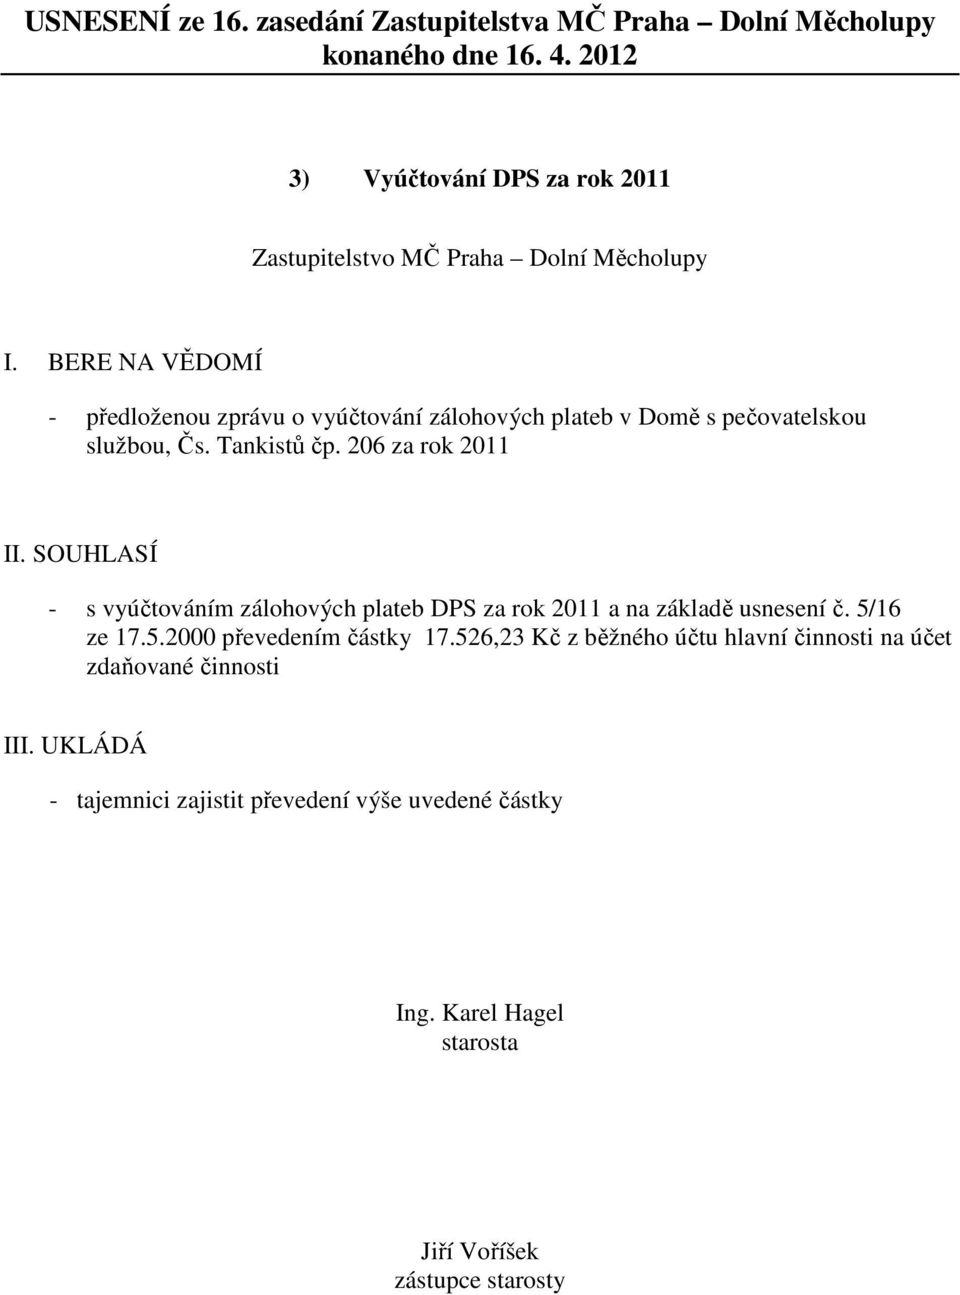 SOUHLASÍ - s vyúčtováním zálohových plateb DPS za rok 2011 a na základě usnesení č. 5/